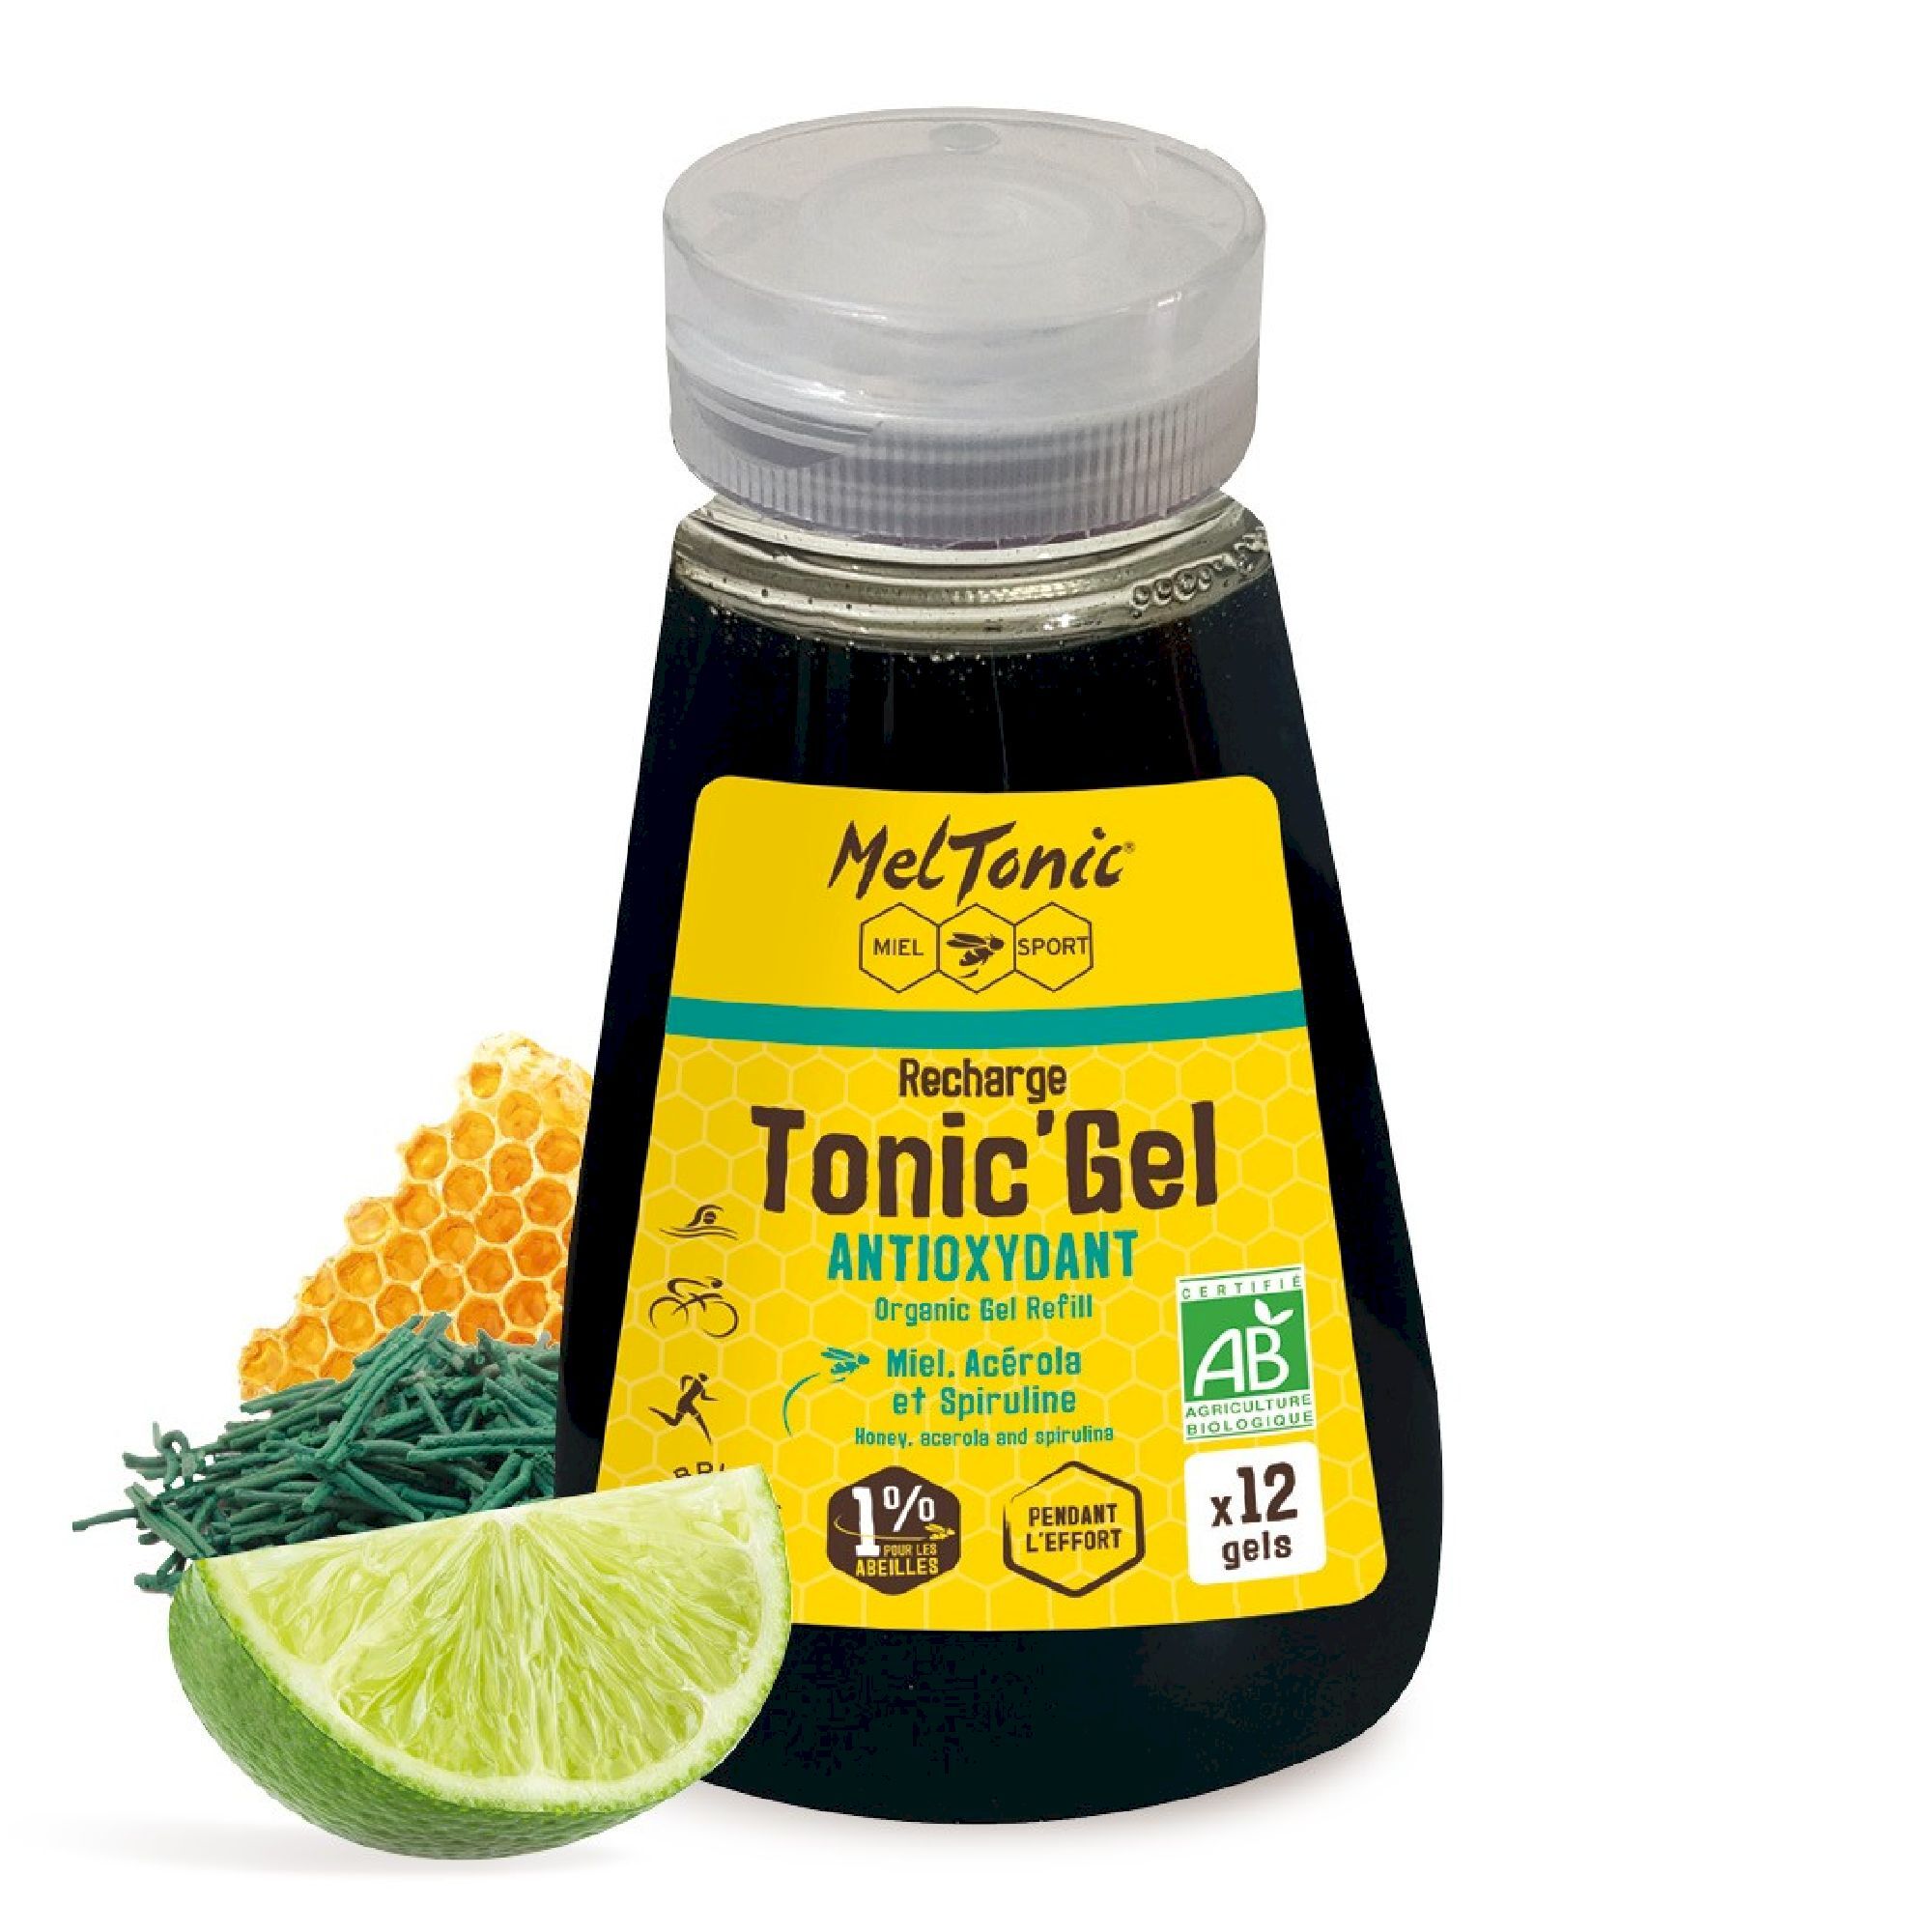 Meltonic Tonic Gel Bio Antioxydant - Recharge Eco - Energy gel